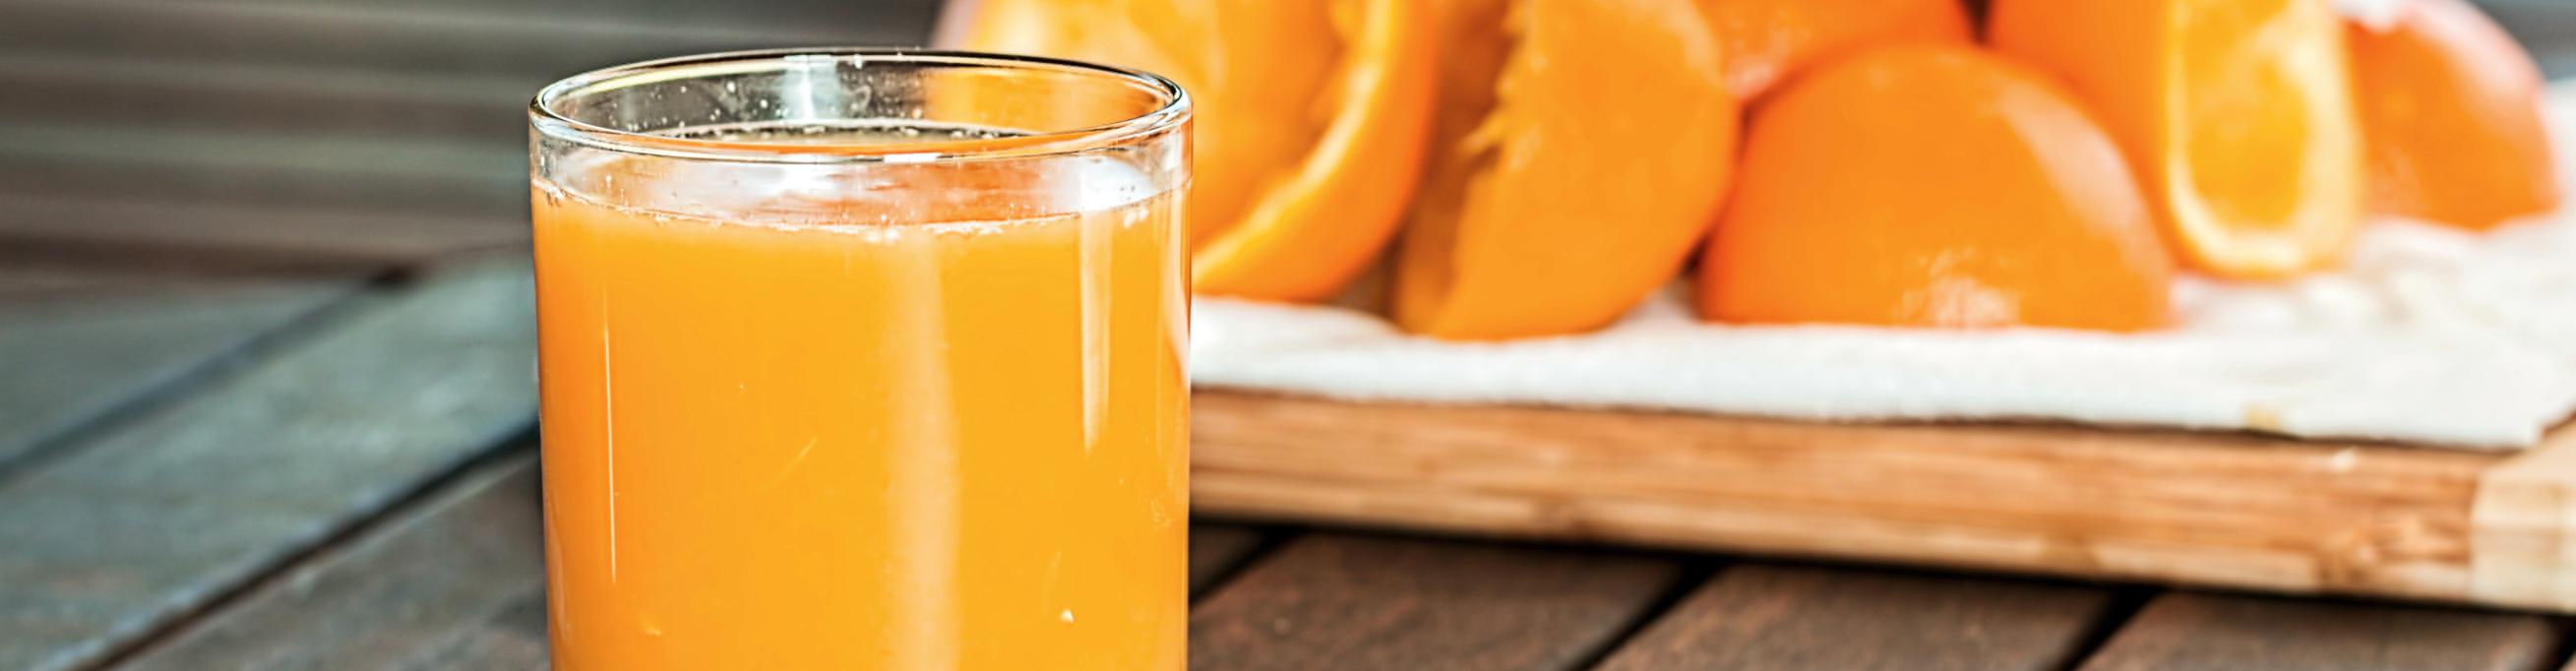 Orange juice and oranges